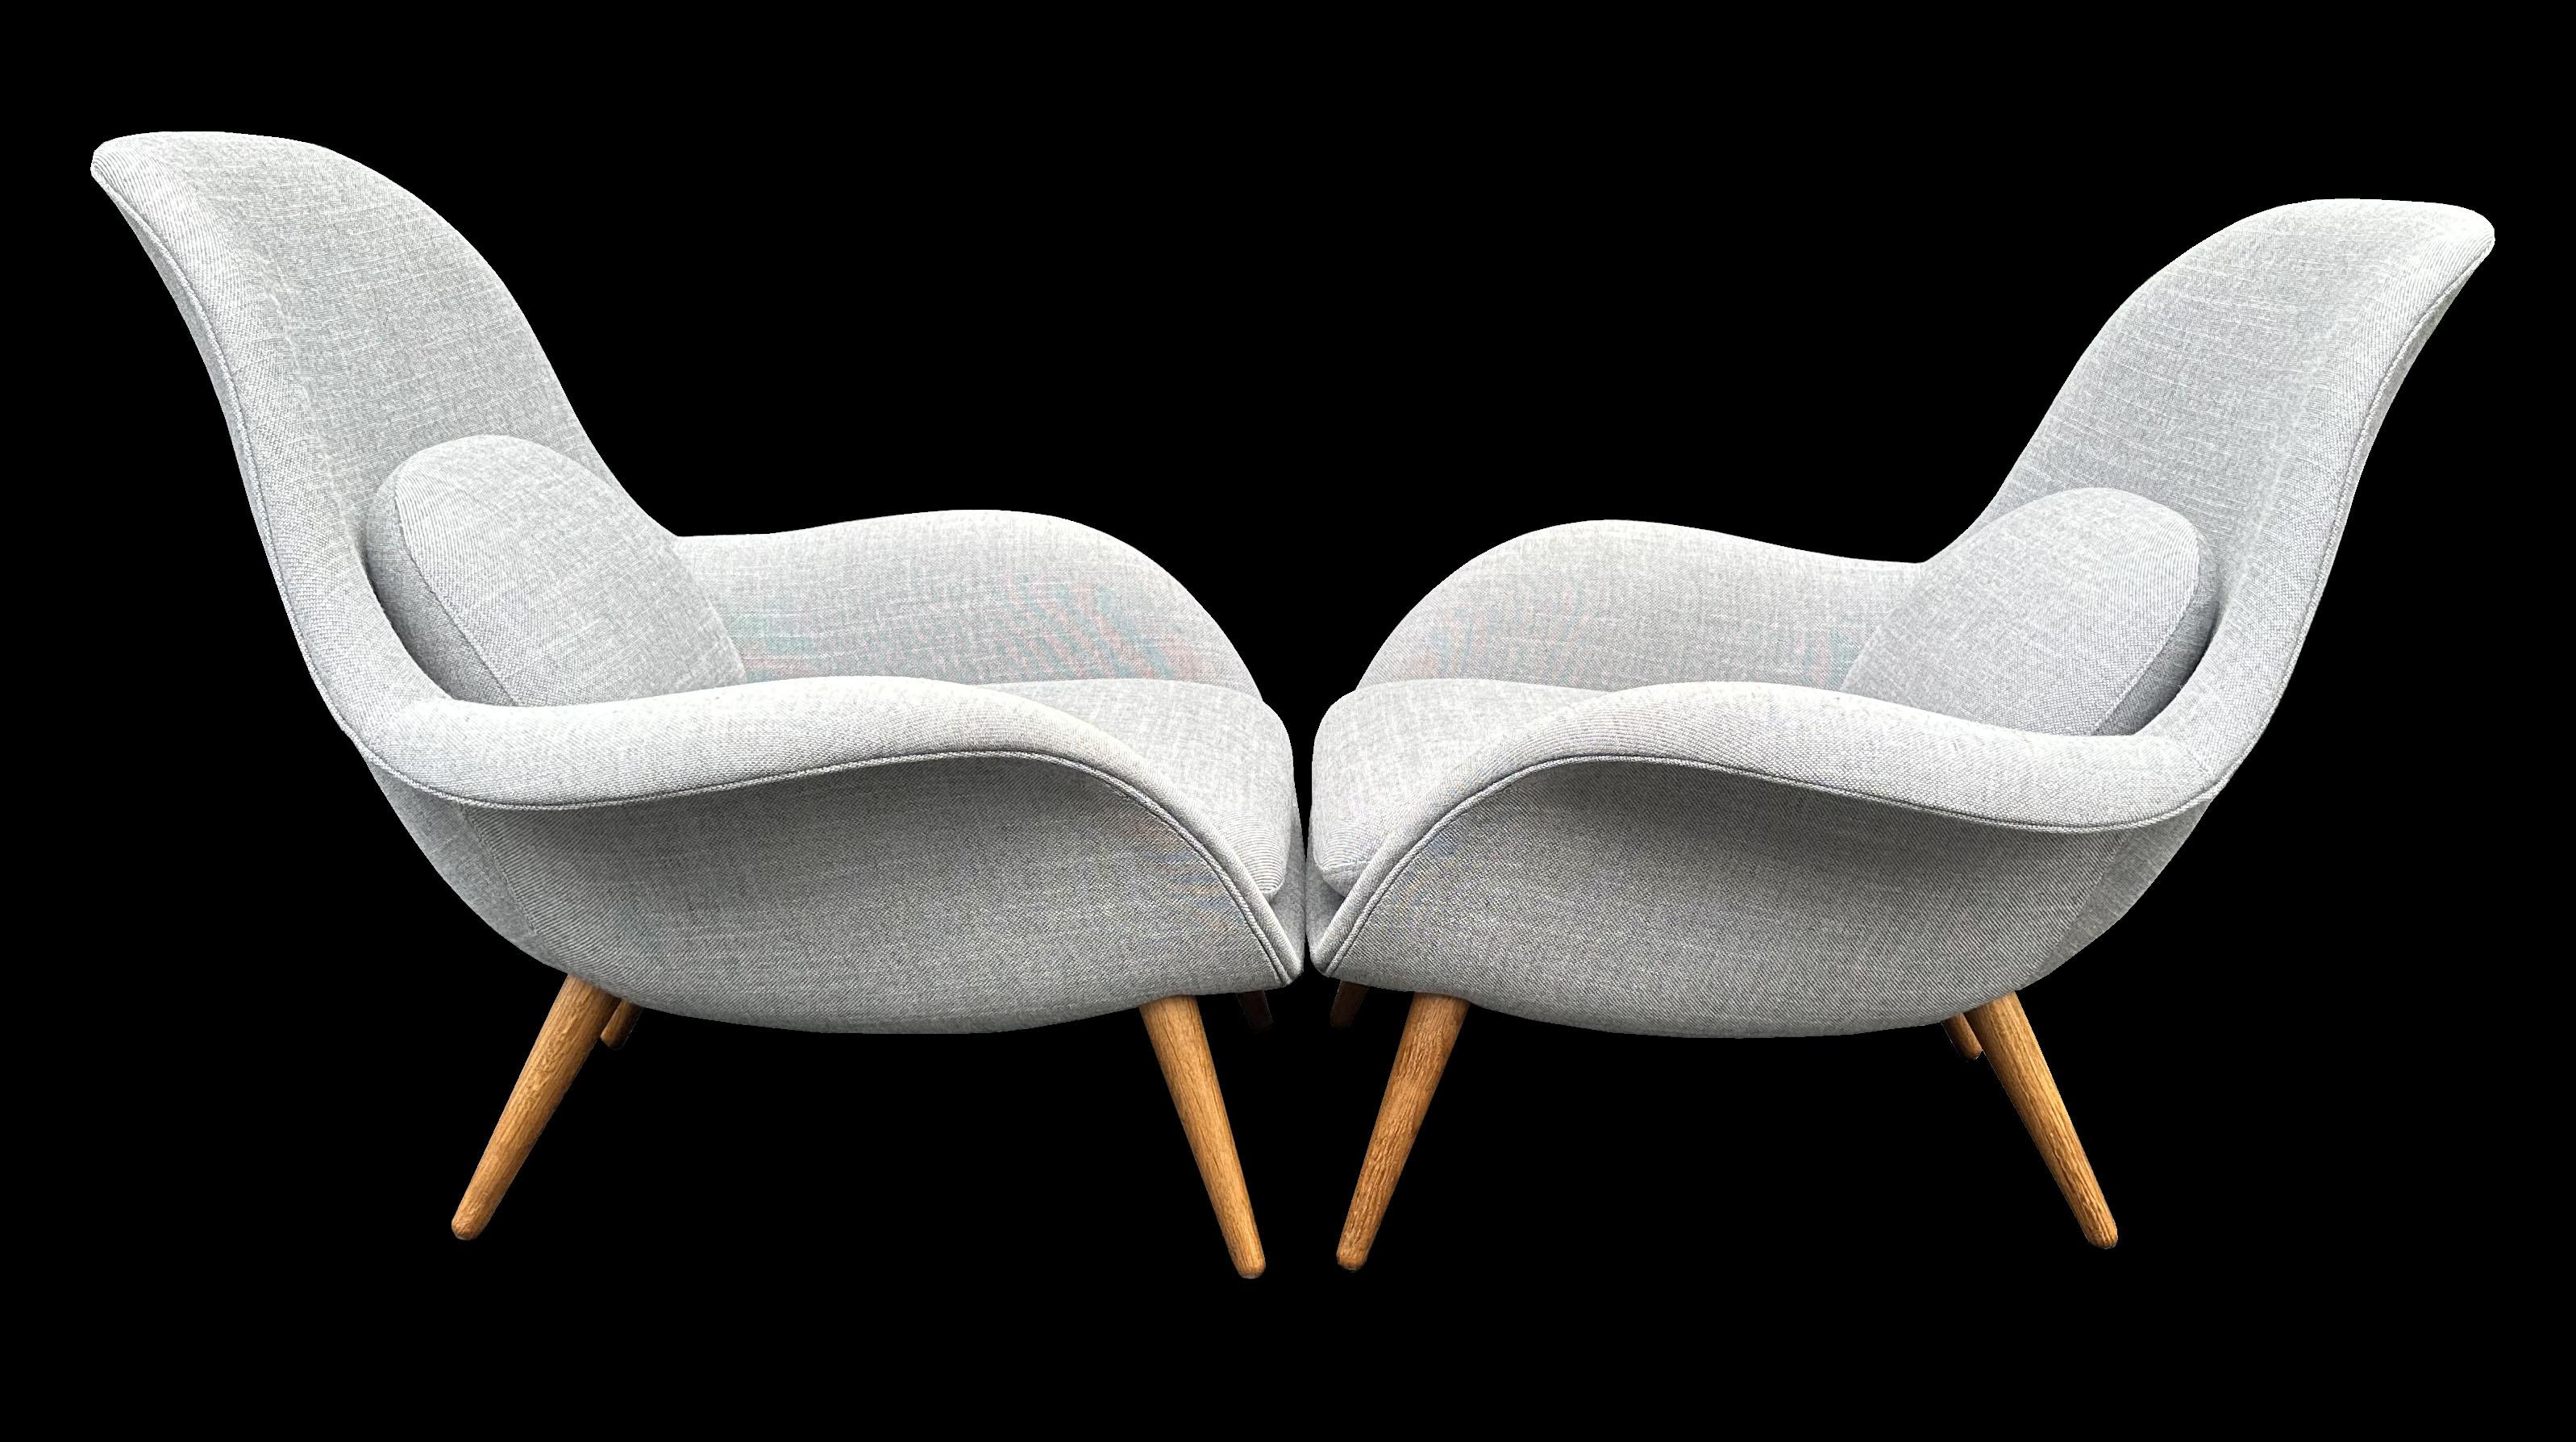 Nous avons 2 paires de ces très cool chaises Lounge Design/One en tissu d'origine gris clair en très bon état, pas d'usure ni de taches. Ils reposent sur des pieds en chêne massif qui sont démontables pour permettre un transport plus économique. Le